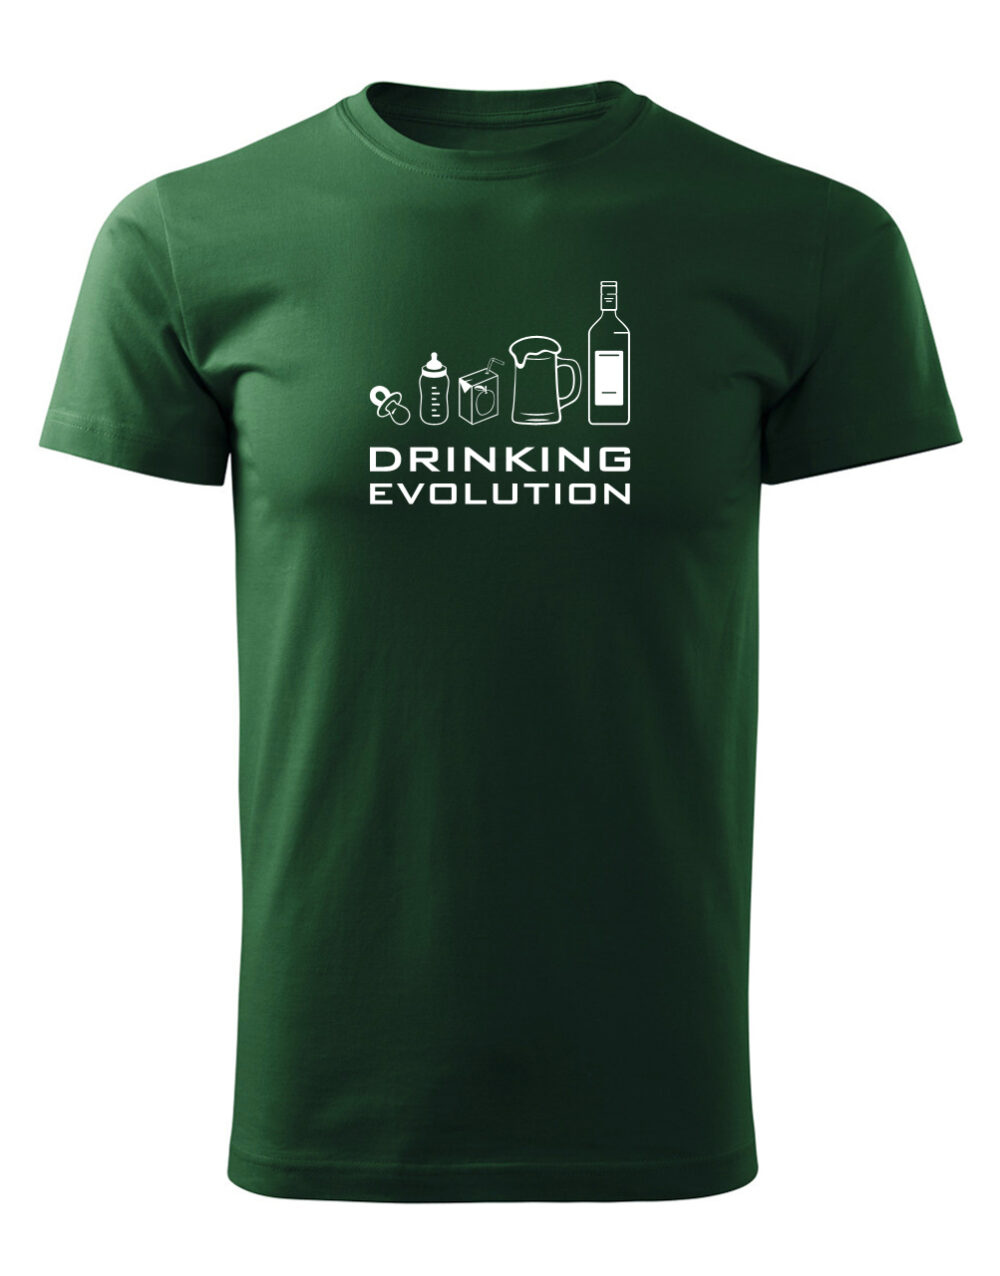 Pánské tričko s potiskem Drinking evolution lahvově zelená